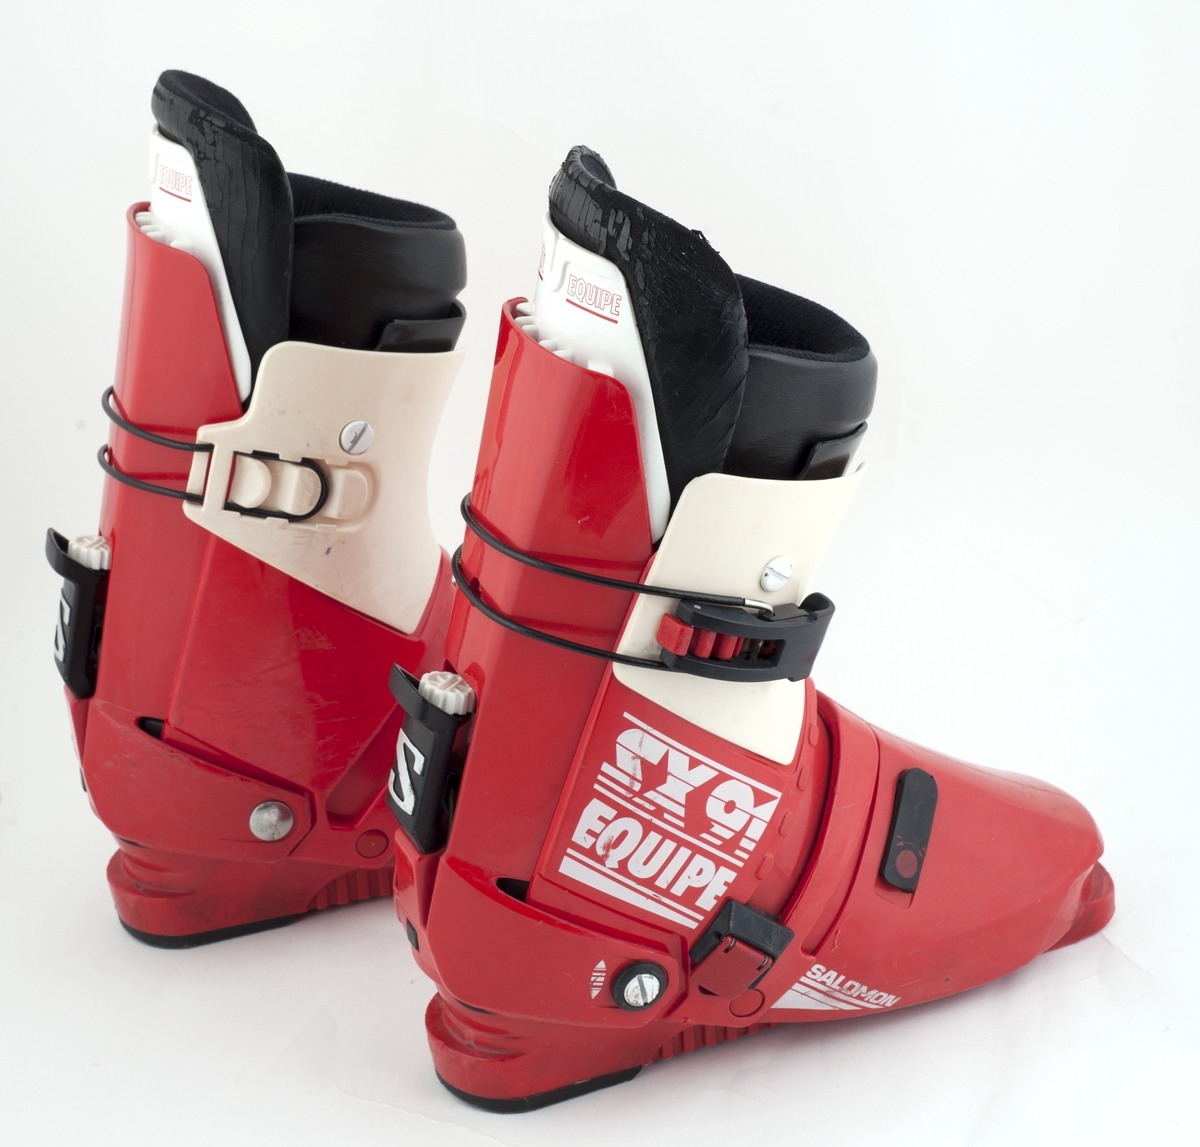 Et par røde Salomon slalomstøvler med hvite og svarte detaljer.